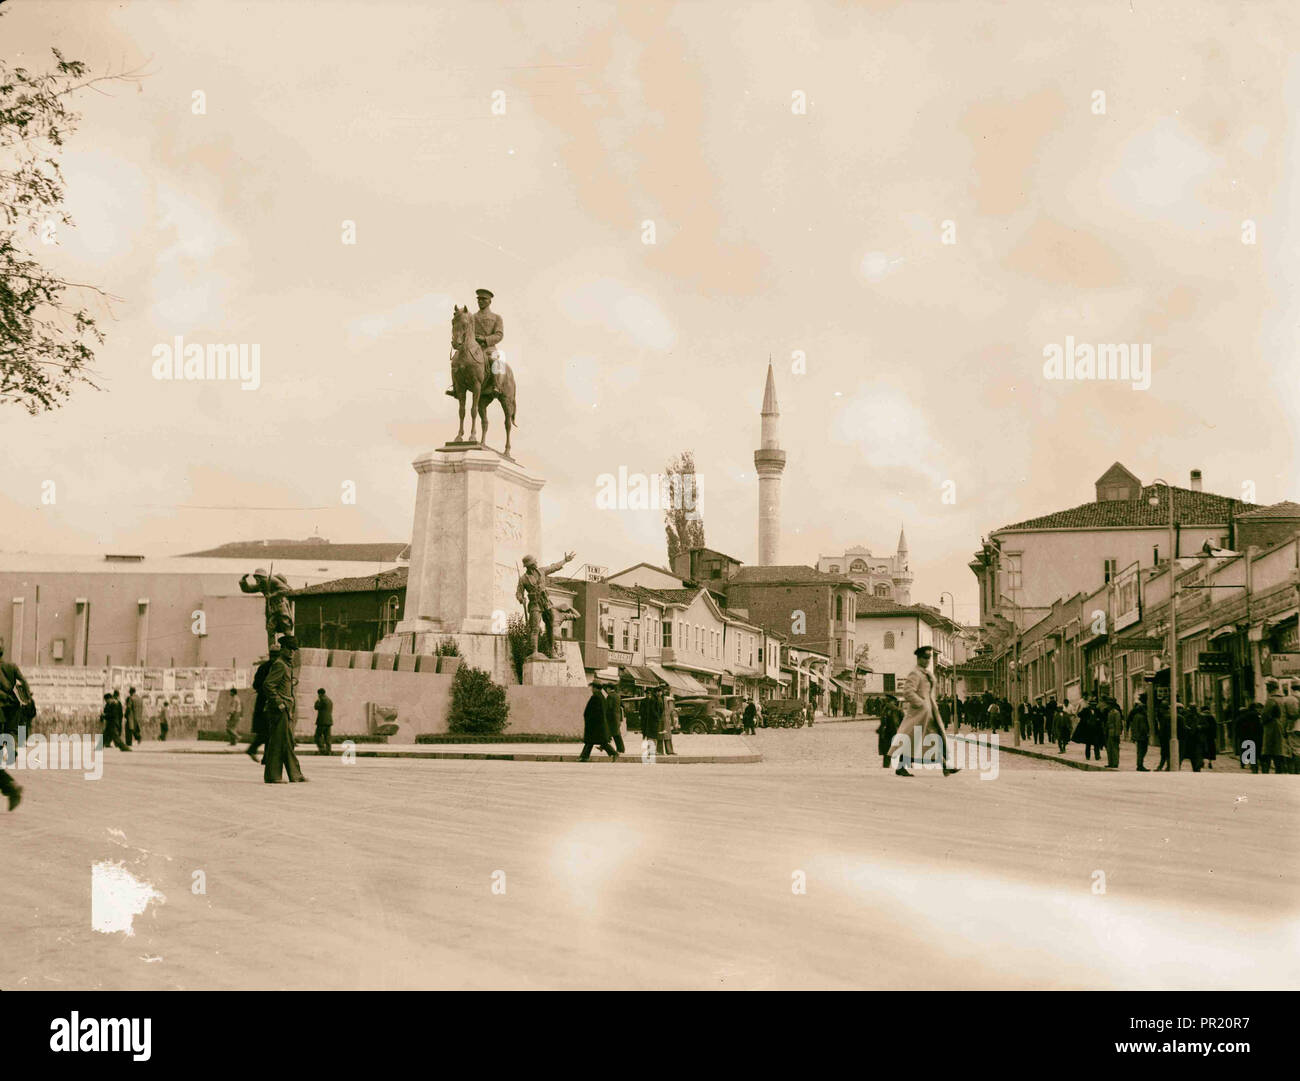 La Turchia. Ankara. Statua equestre di Ata-Turk [cioè, Ataturk] tra vecchi e nuovi di Ankara. 1935, Turchia, Ankara Foto Stock